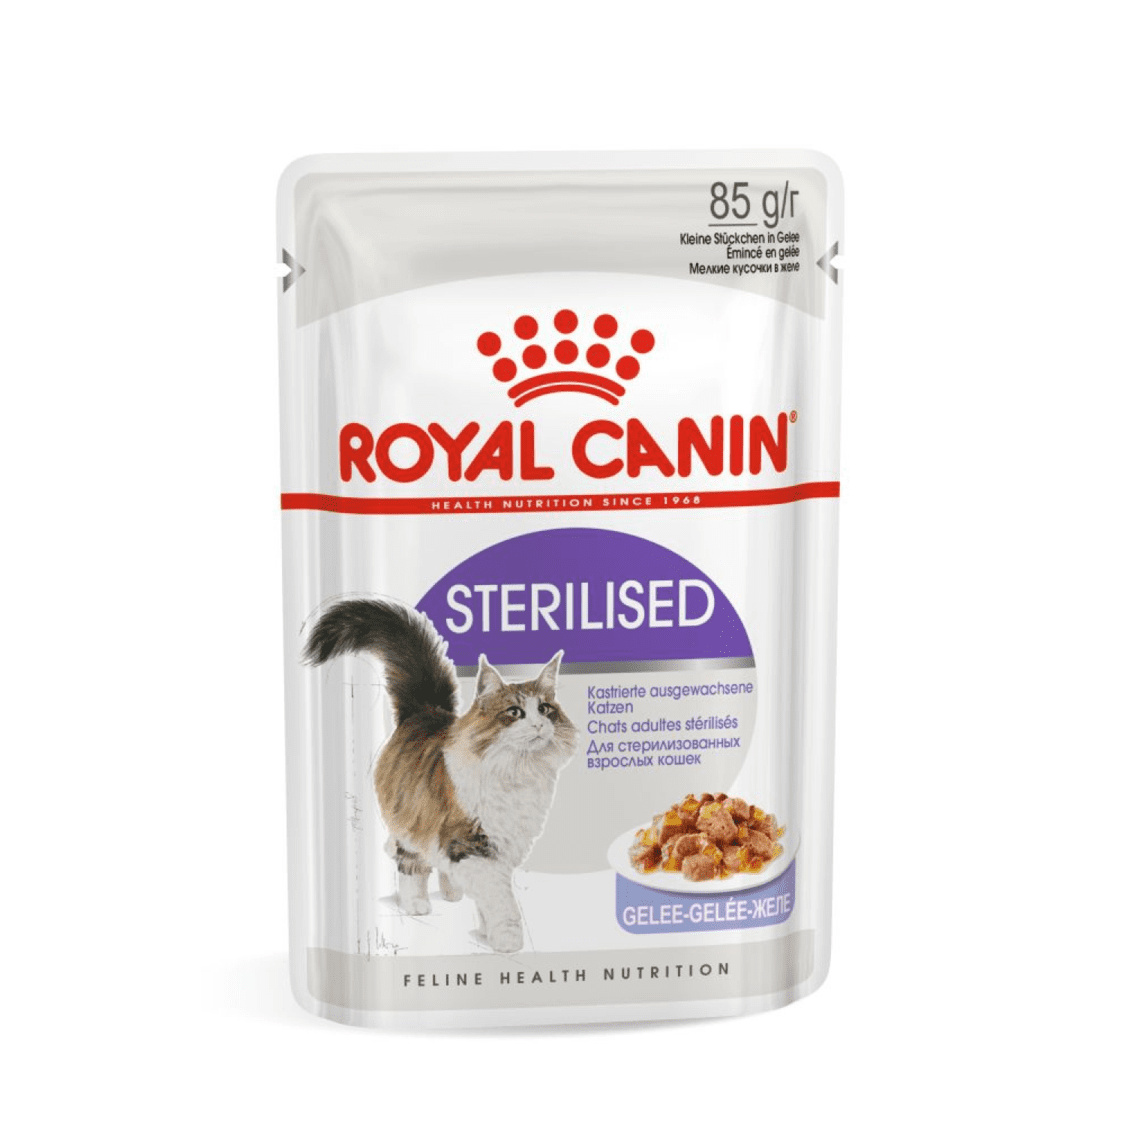 Royal Canin паучи Royal Canin паучи кусочки в желе для кастрированных кошек 1-7лет (1 шт.) royal canin вет паучи royal canin вет паучи паучи для кошек при пищевой аллергии с острой непереносимостью с курицей 1 шт